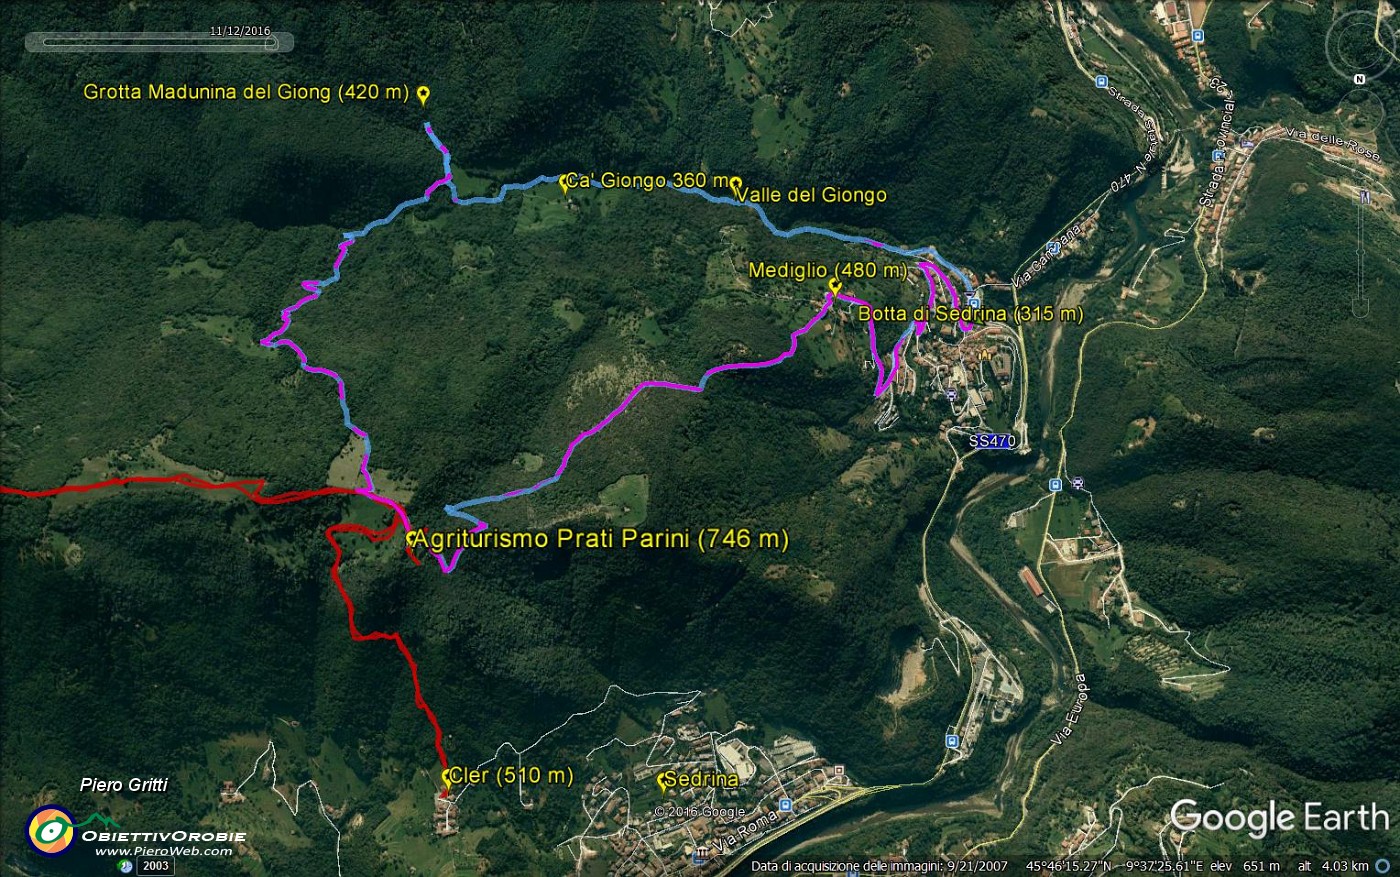 06 Tracciato GPS - anello- Botta di Sedrina-Valel del Giongo - Prati Parini-3.jpg